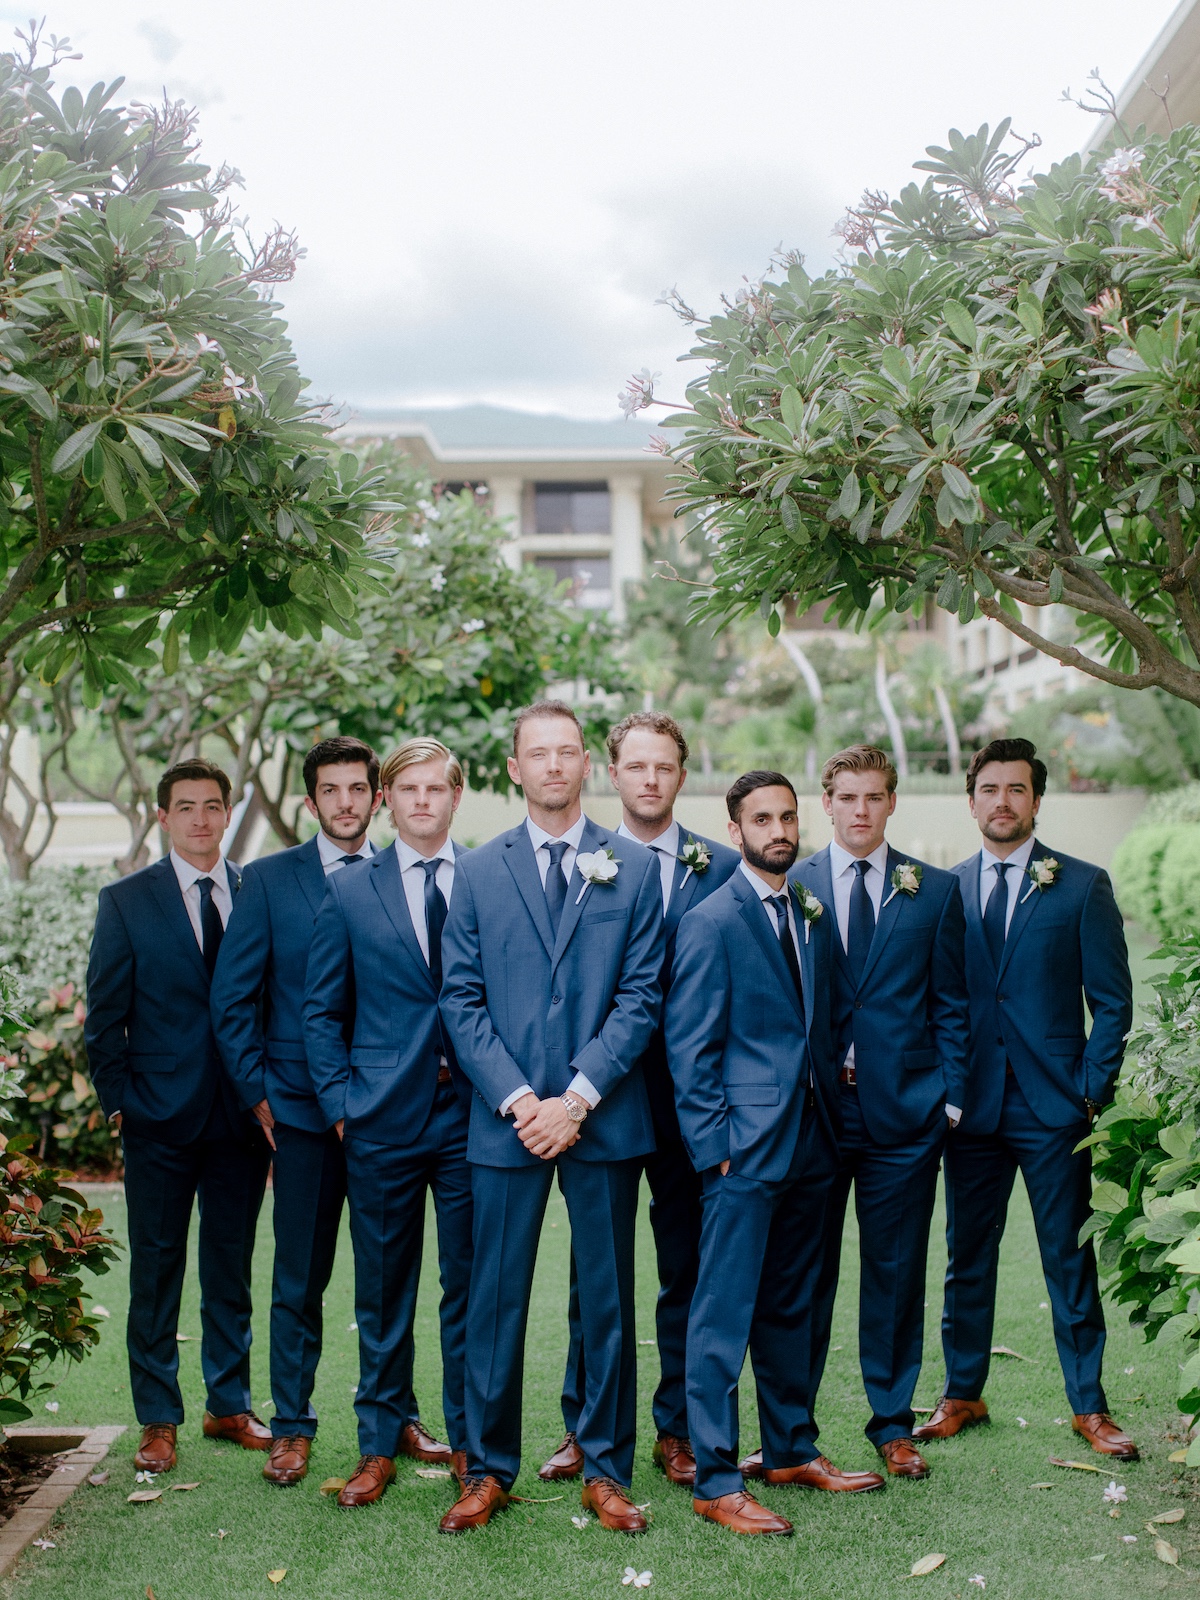 Blue groom and groomsmen suits 